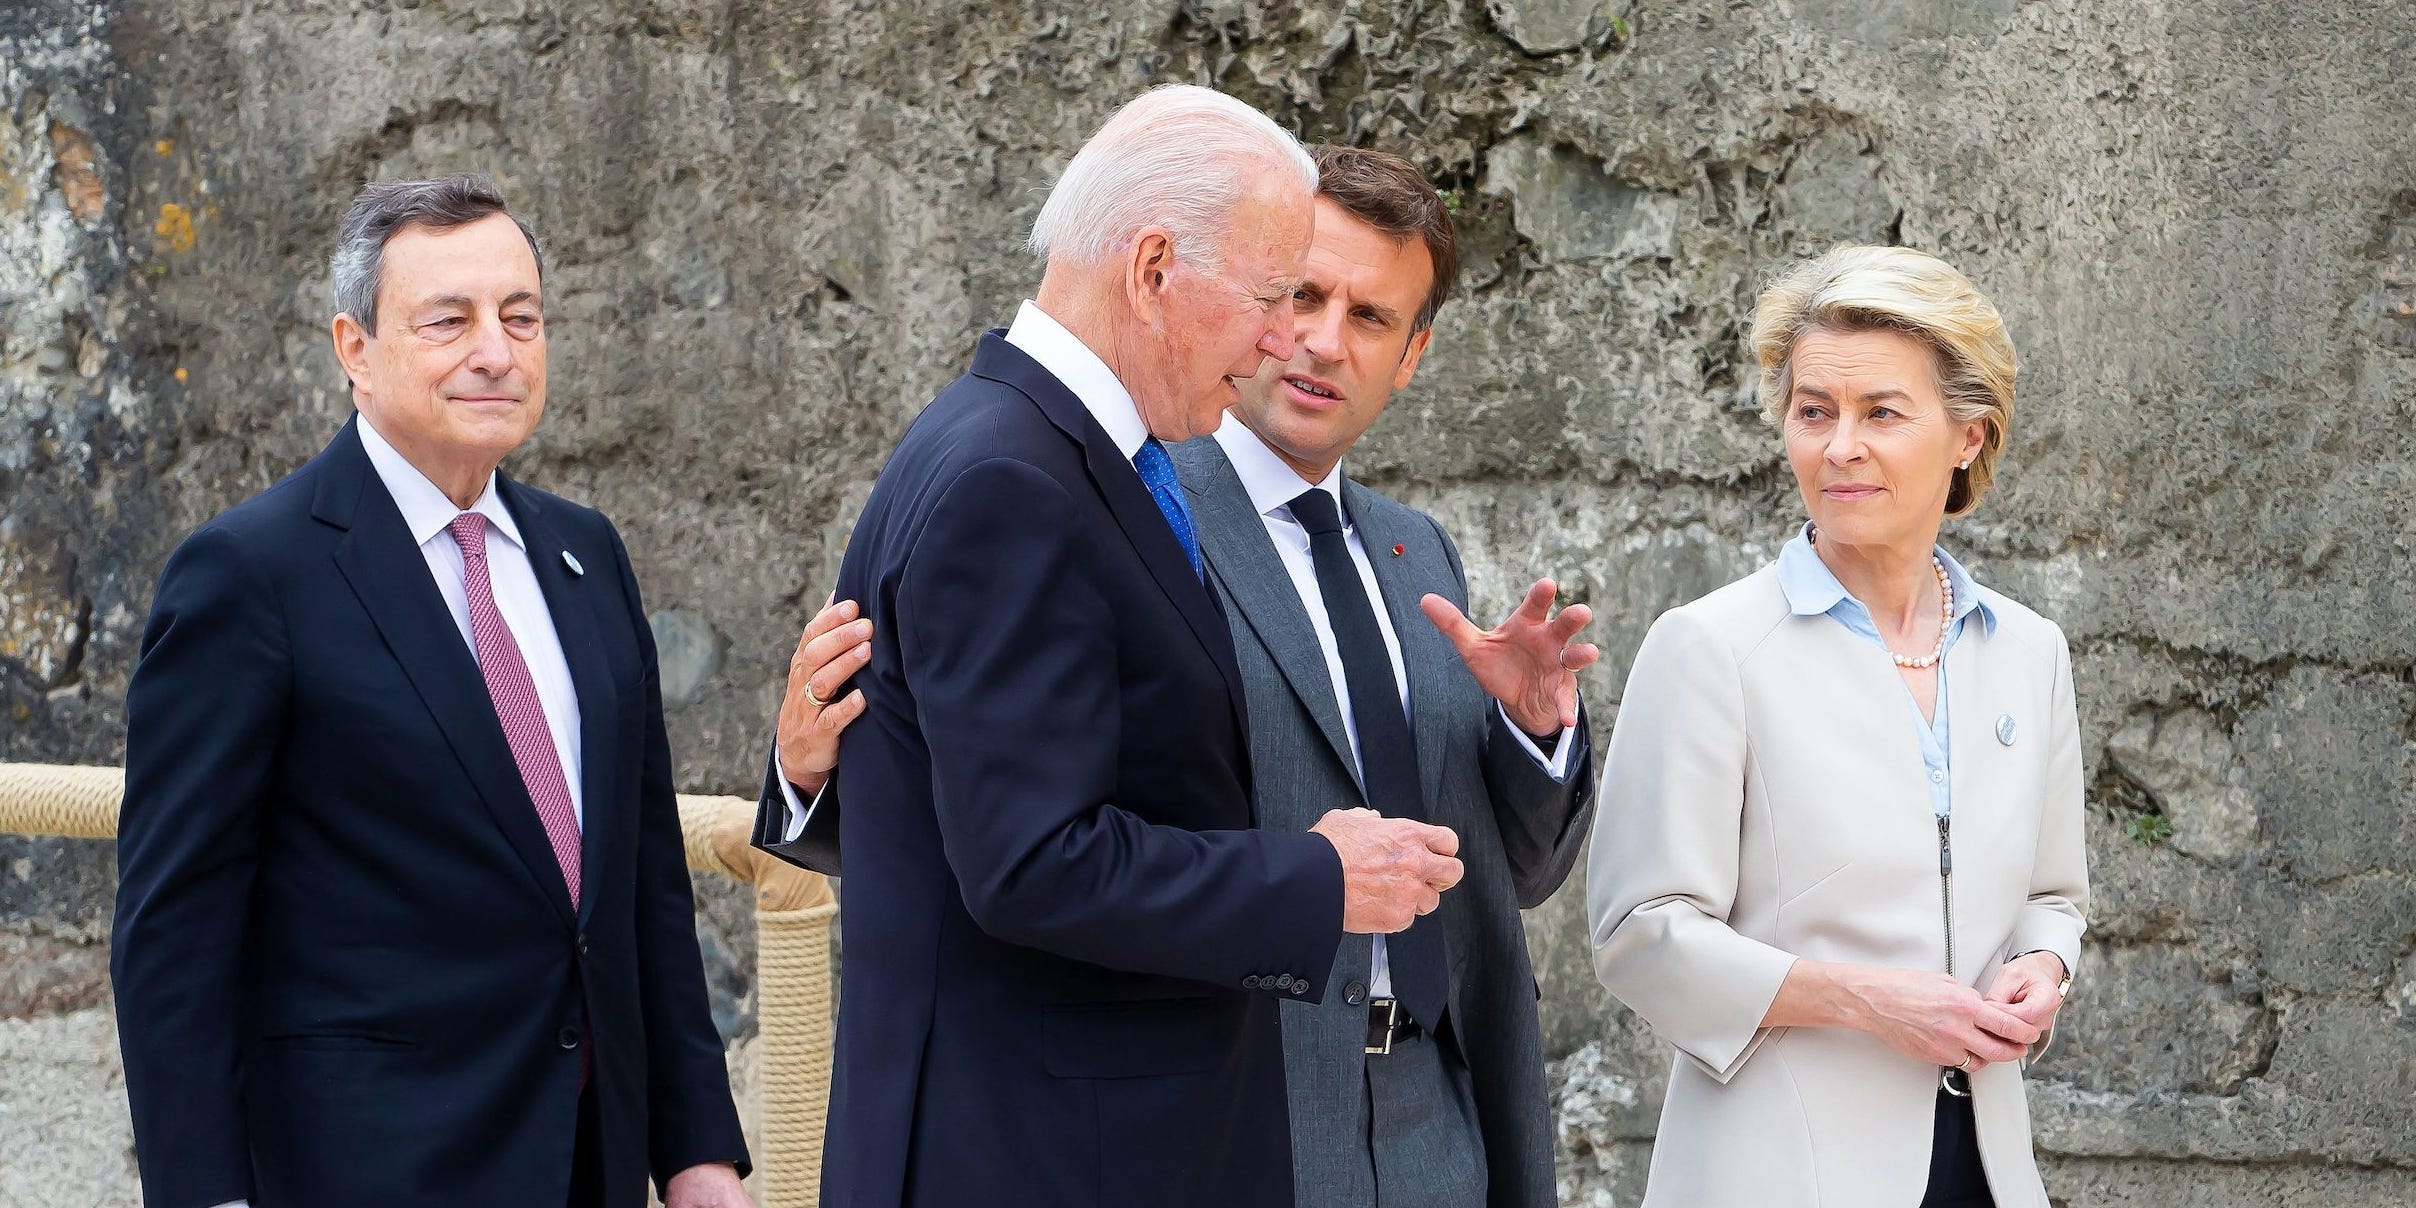 Joe Biden with Emmanuel Macron, Ursula von der Leyen, and  Mario Draghi